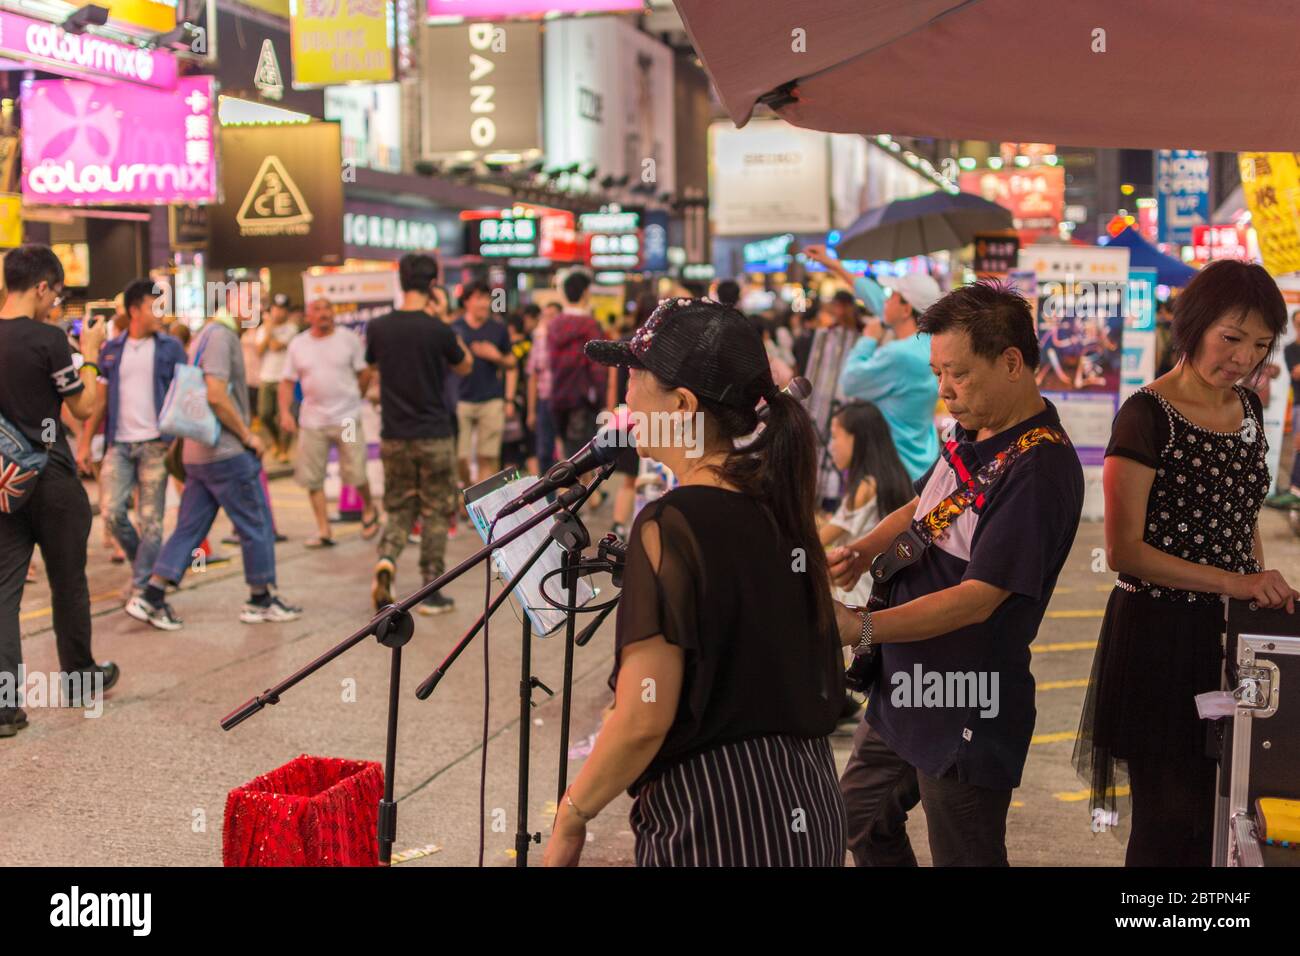 Hong Kong / China - July 26th 2015: Street musicians performing in Kowloon, Hong Kong Stock Photo